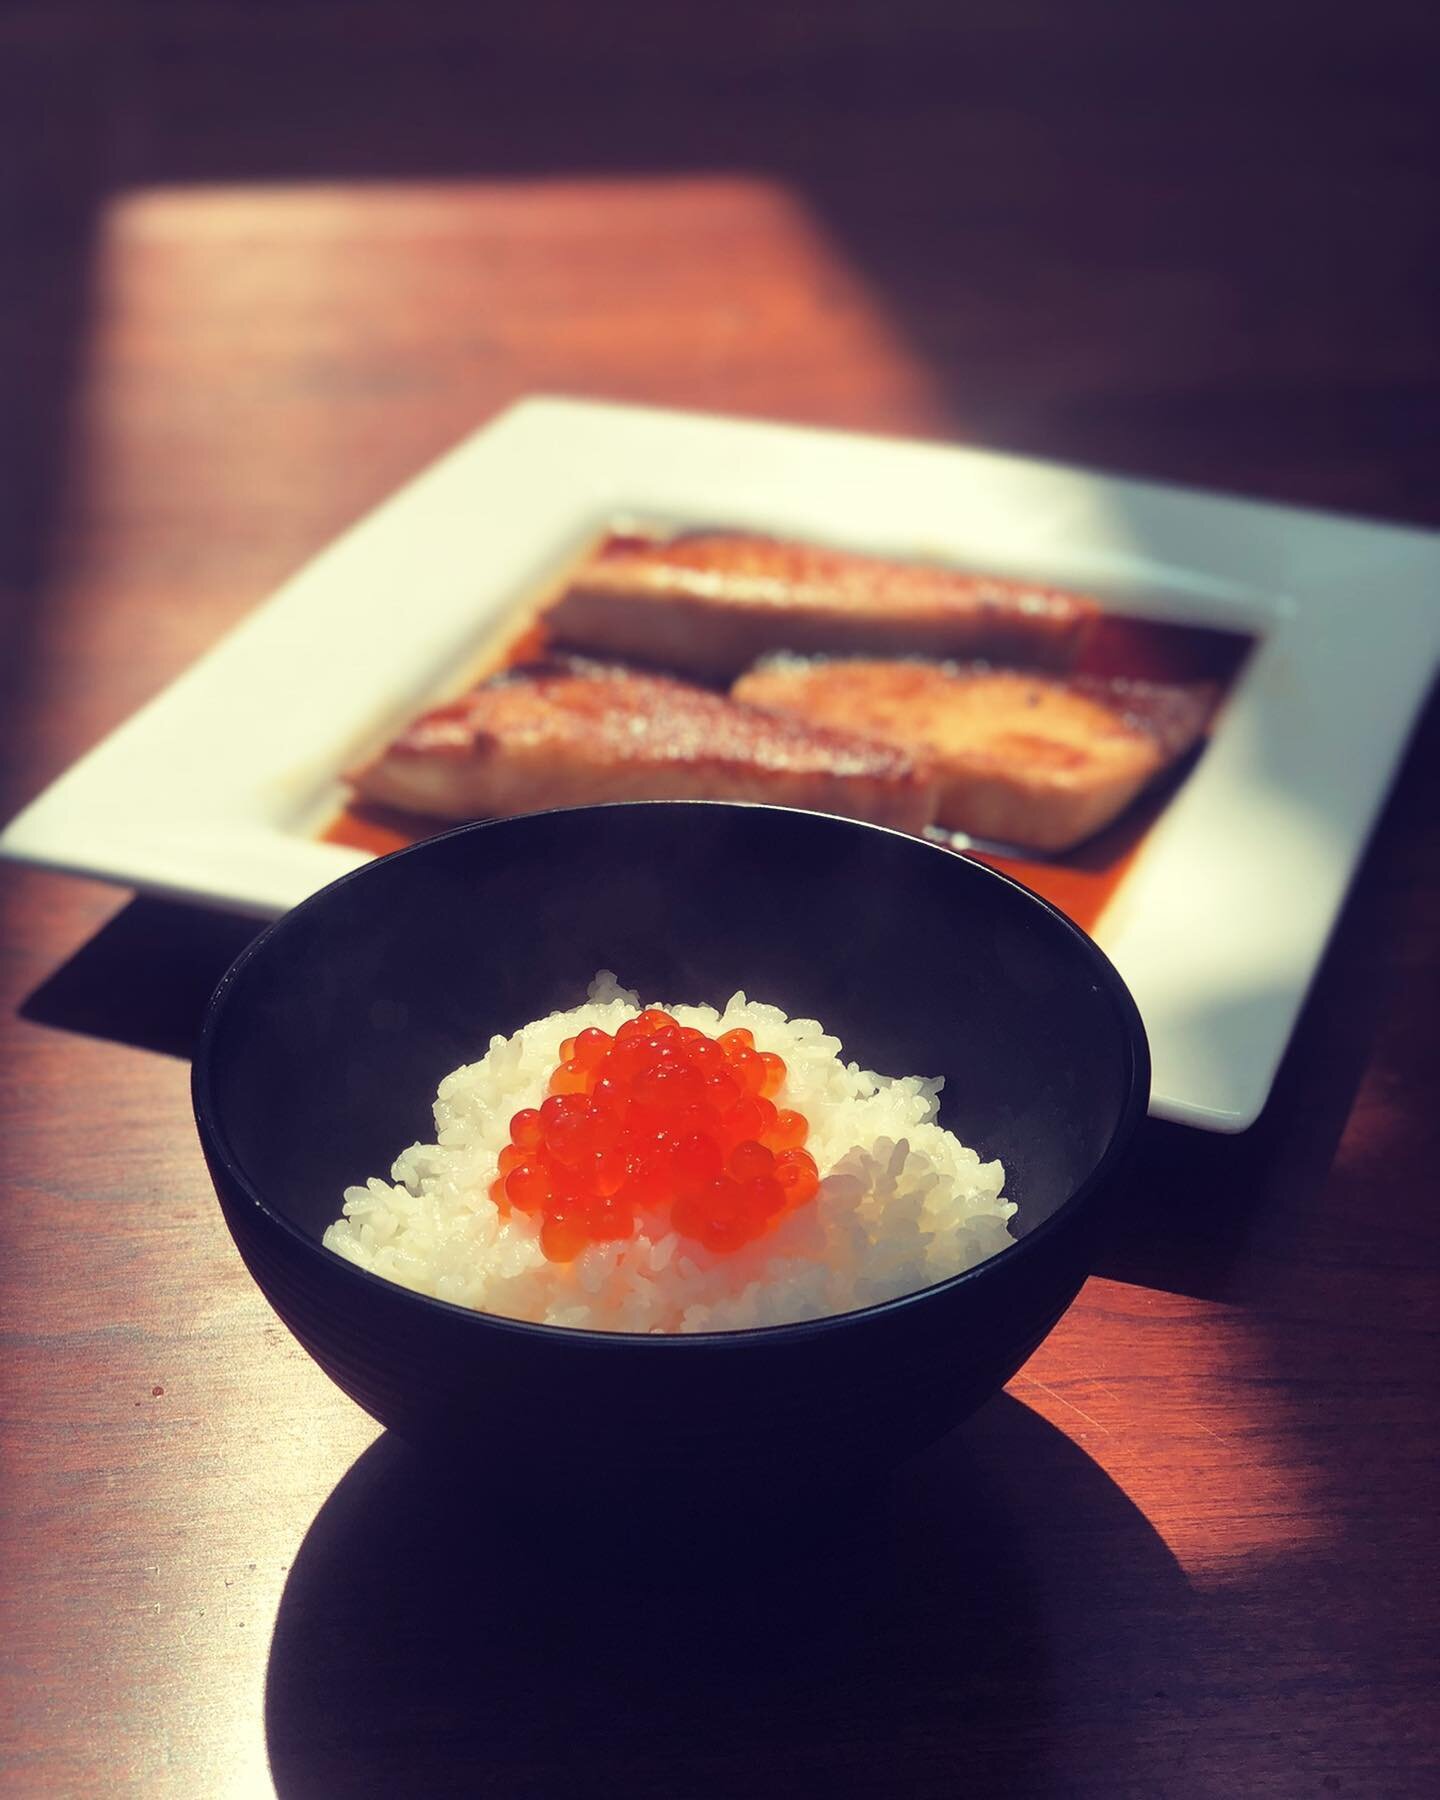 Simple is Best 

#ikura #kanpachi #rice #simplemeals